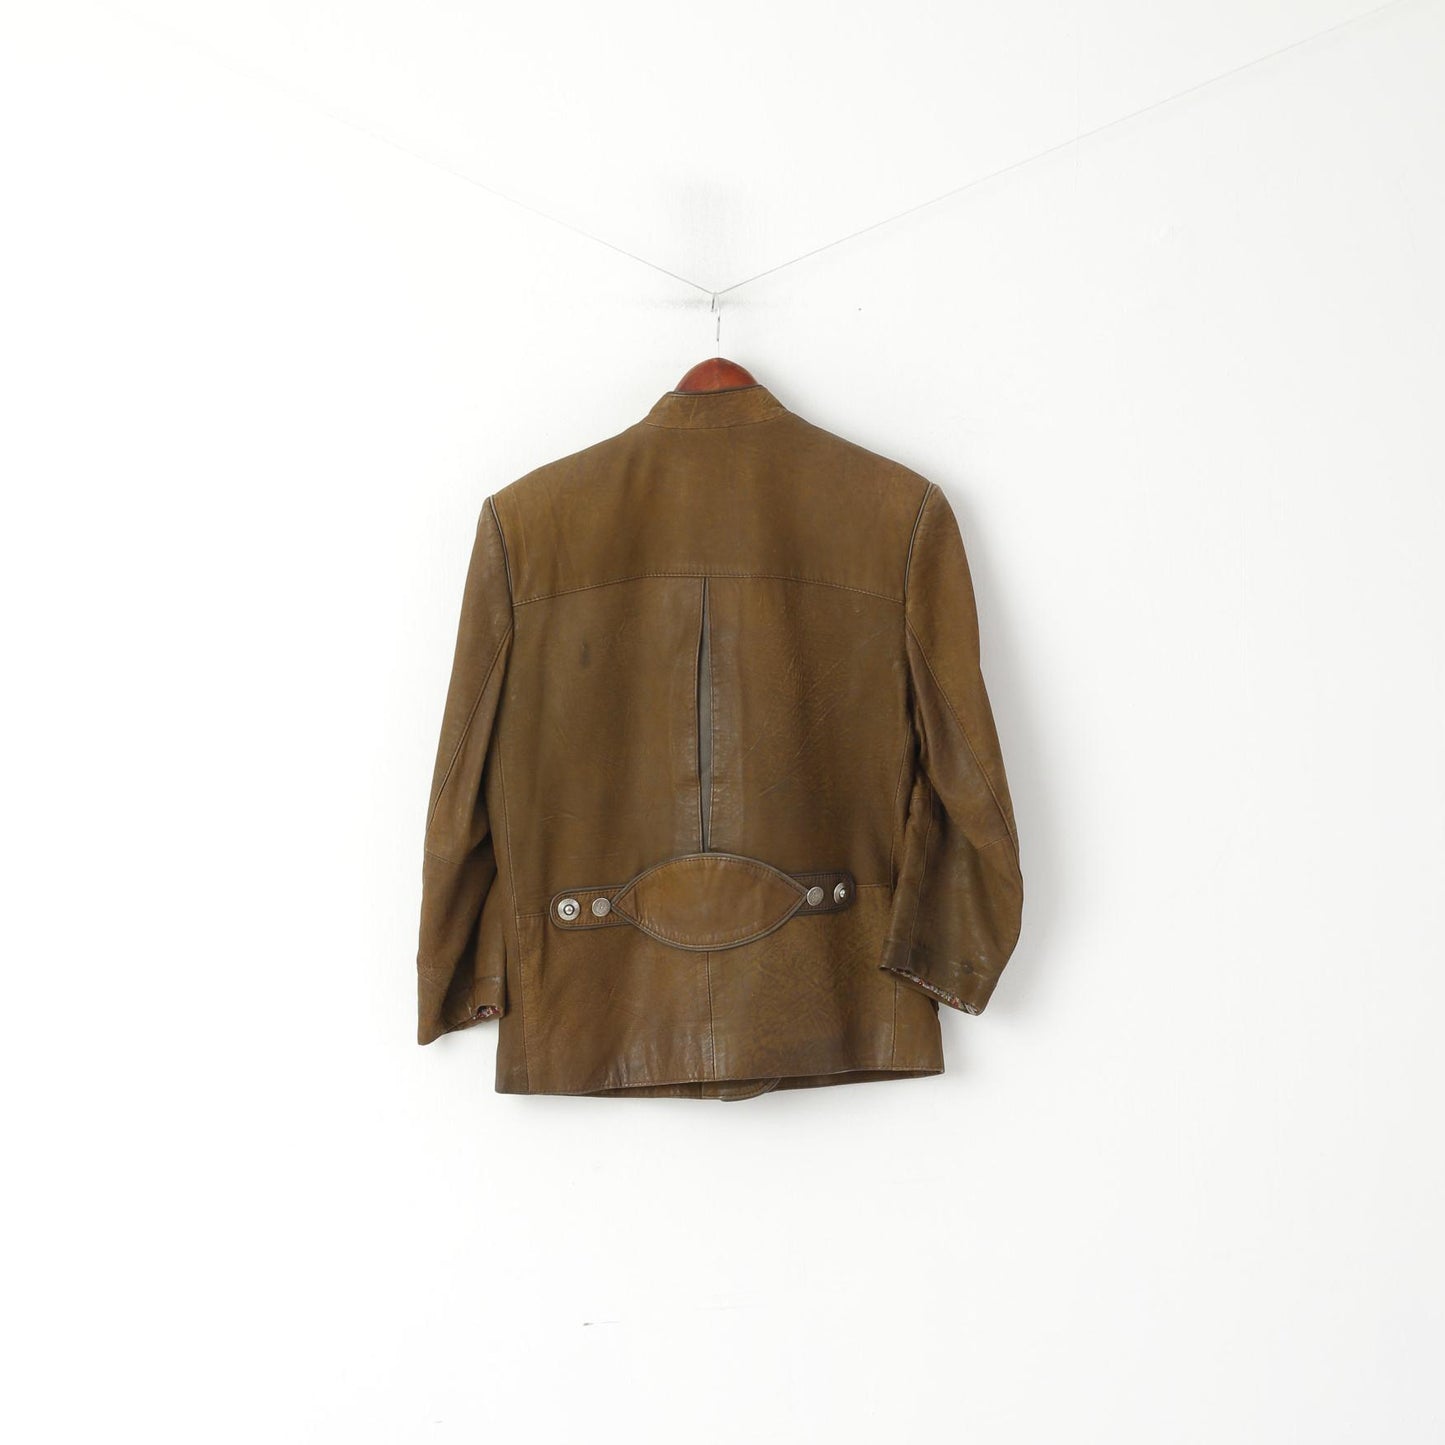 Veste Vintage femme 36 S en cuir marron, épaulettes militaires, boutons décoratifs, haut